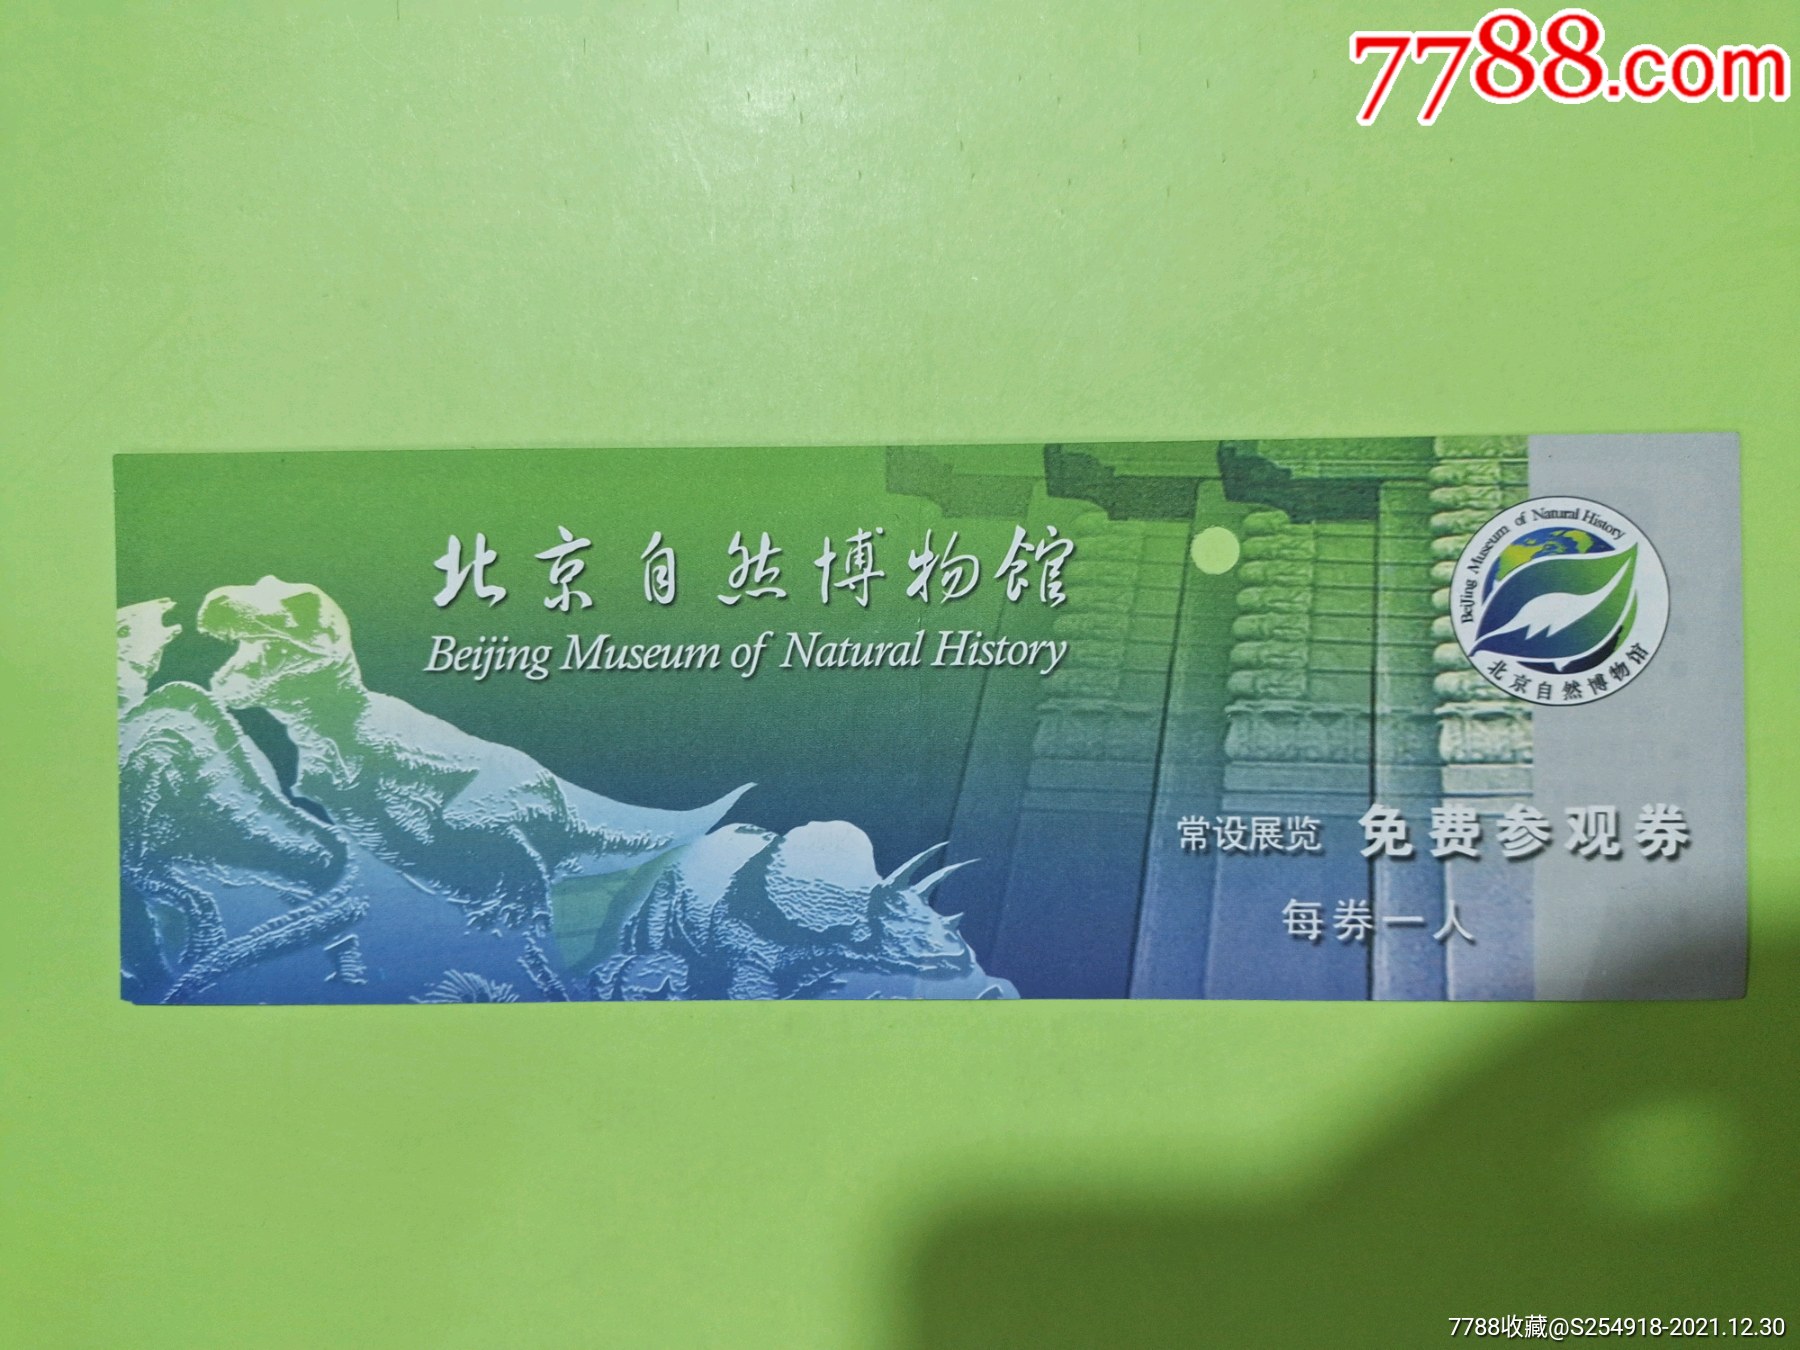 北京自然博物馆-价格:2元-se84627371-旅游景点门票-零售-7788收藏